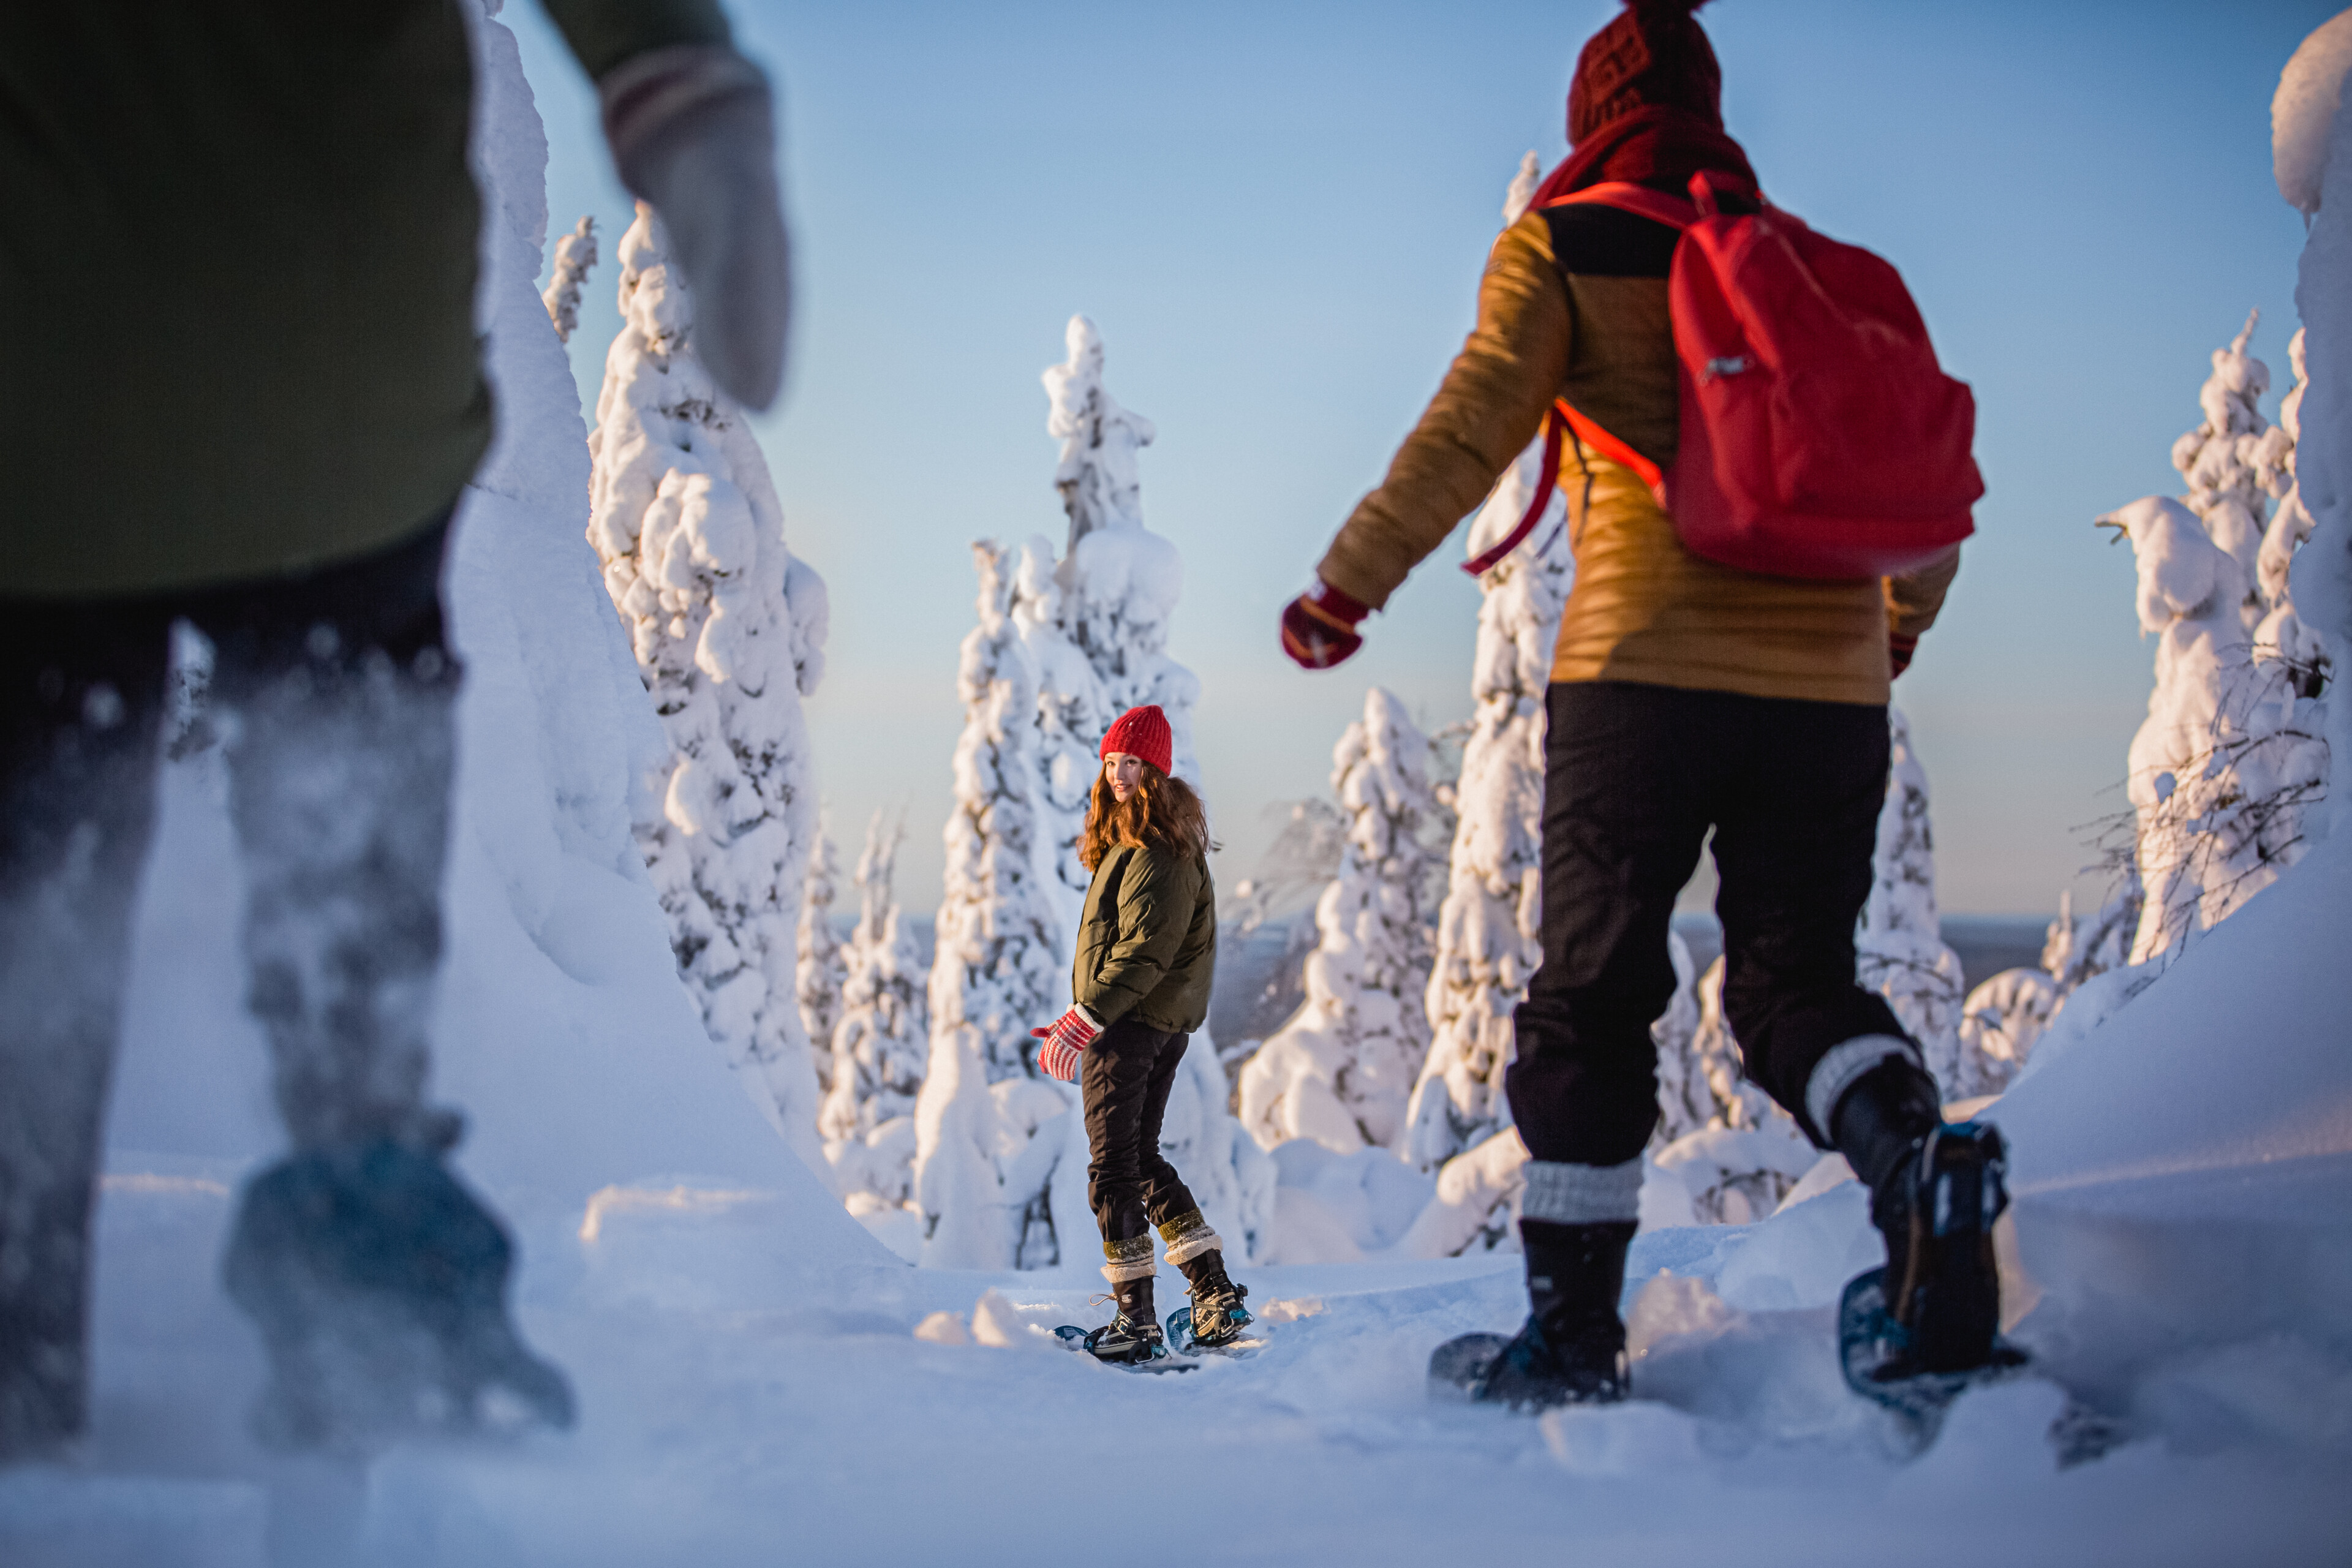 Ihmisiä nauttimassa talvesta, lumesta ja auringosta lumikengillä lumisessa maisemassa Rovaniemellä, Lapissa.